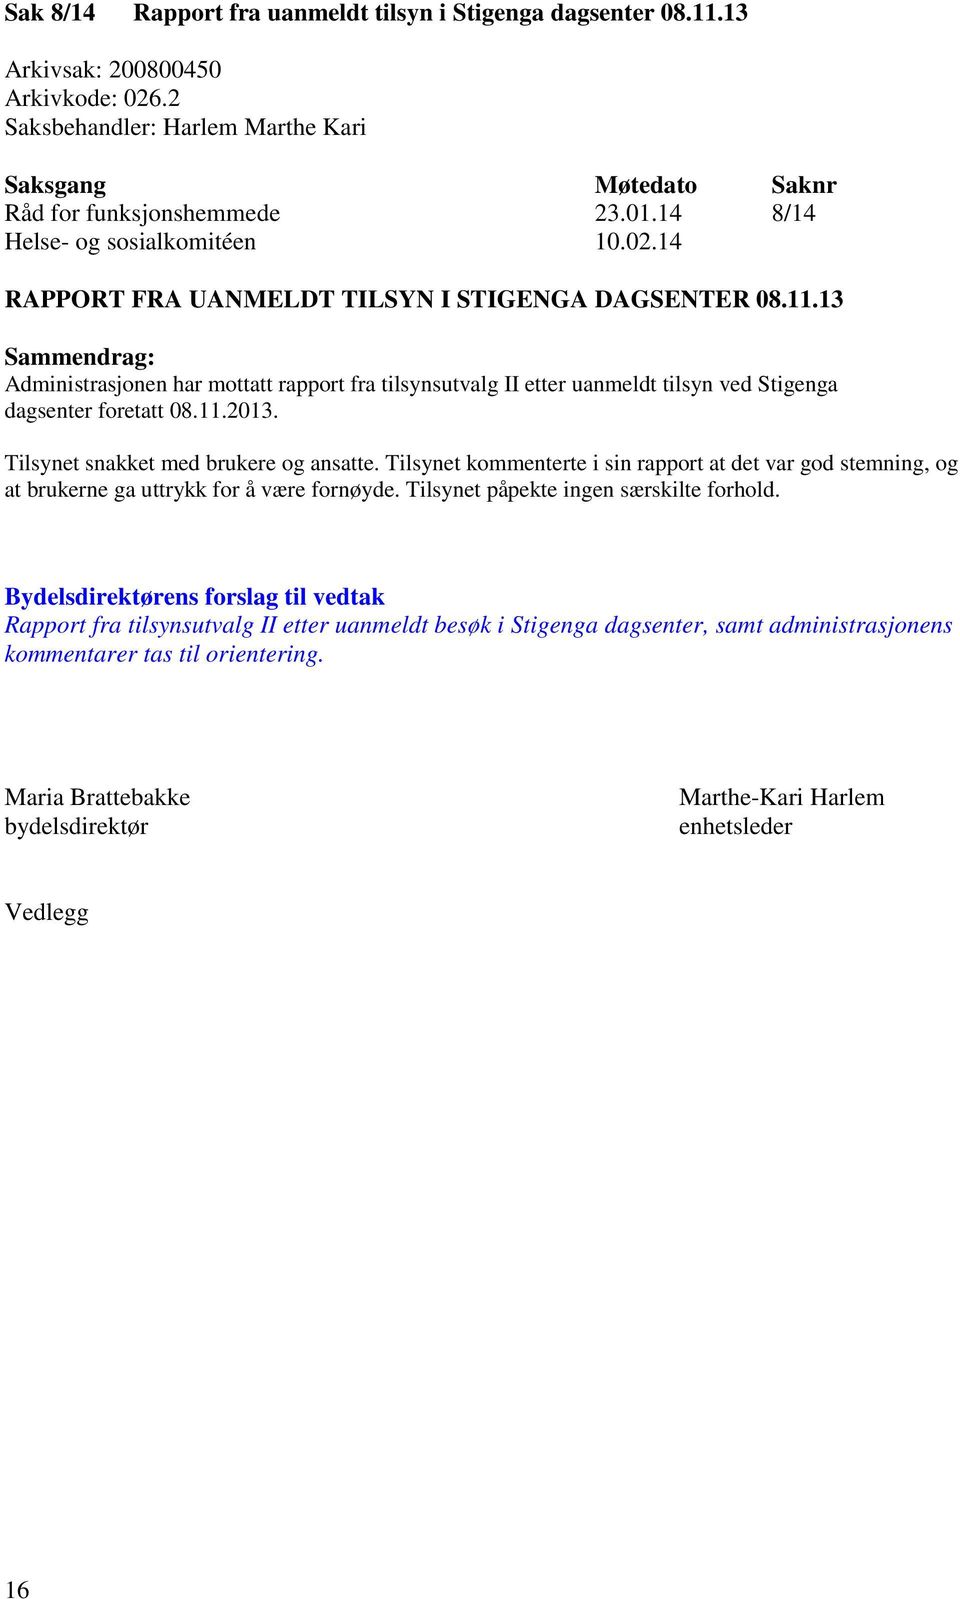 13 Sammendrag: Administrasjonen har mottatt rapport fra tilsynsutvalg II etter uanmeldt tilsyn ved Stigenga dagsenter foretatt 08.11.2013. Tilsynet snakket med brukere og ansatte.